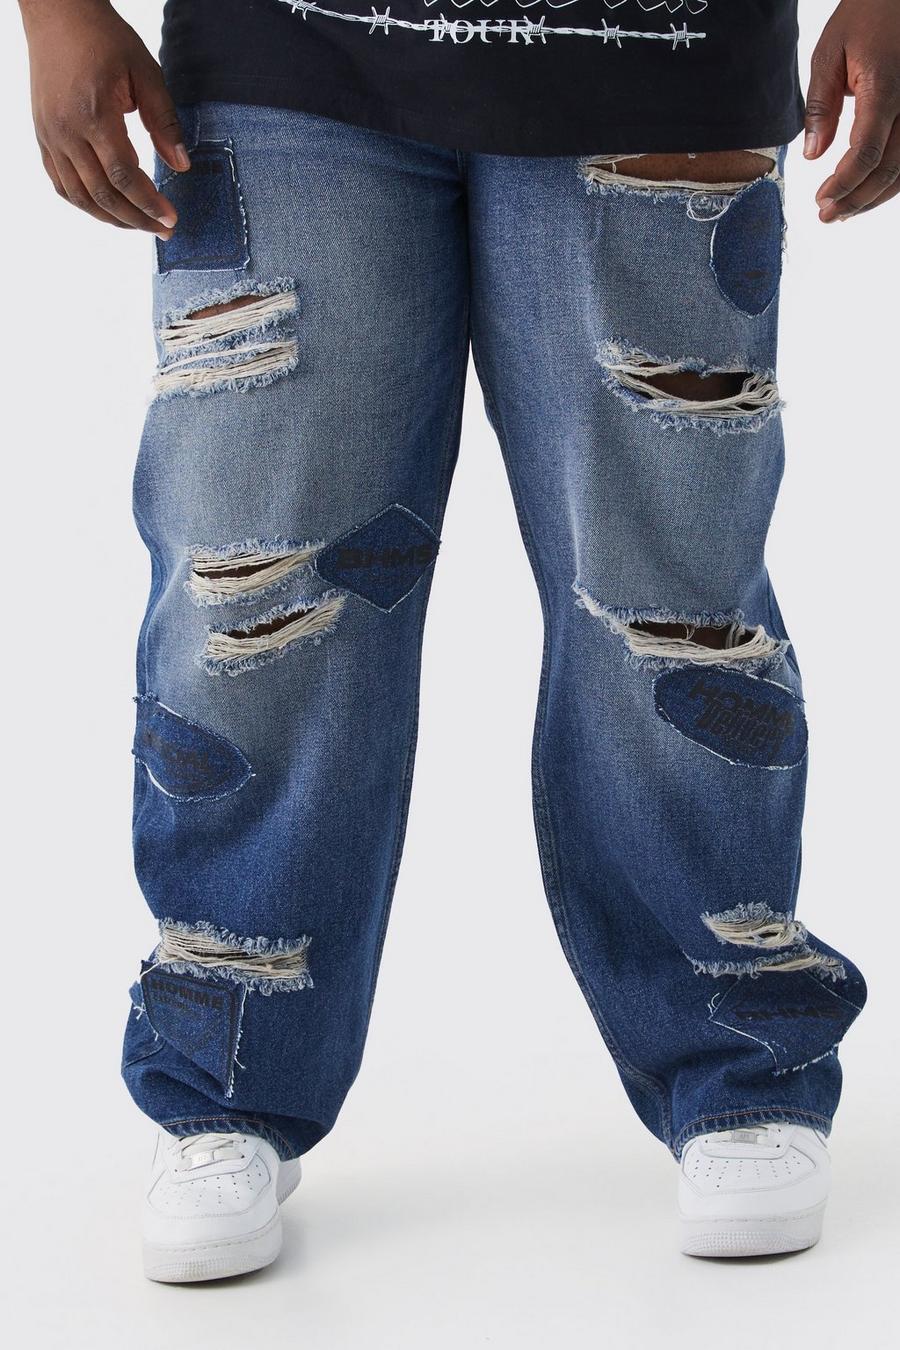 Jeans rilassati Plus Size in denim rigido con applique, Antique blue